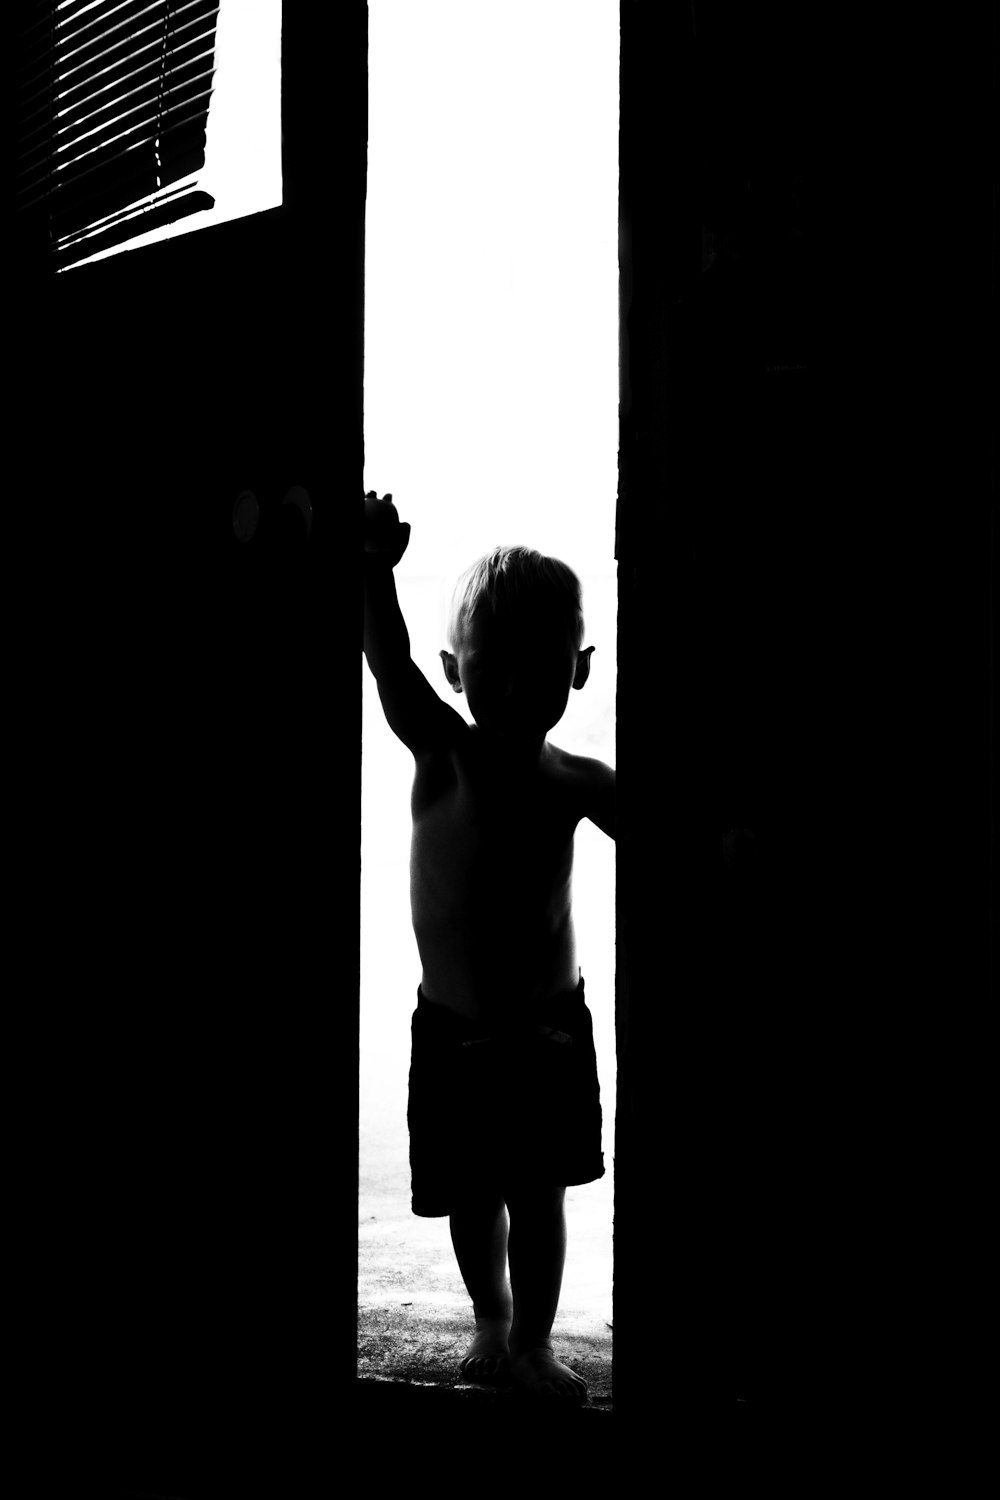 Ein kleines Kind, das vor einer Tür steht